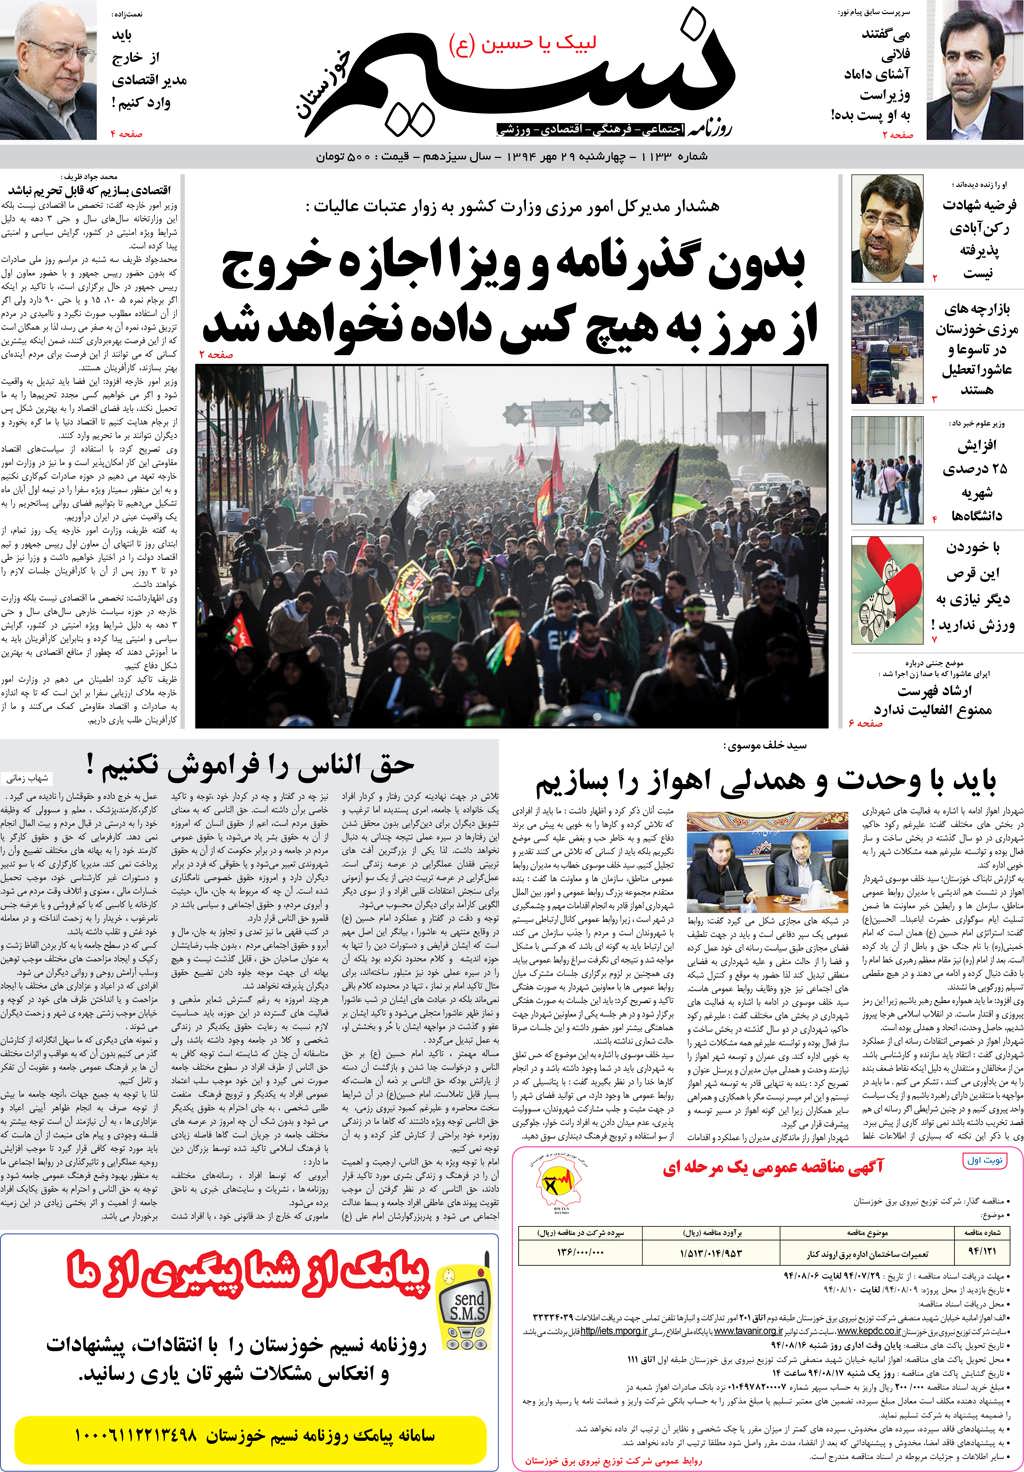 صفحه اصلی روزنامه نسیم شماره 1133